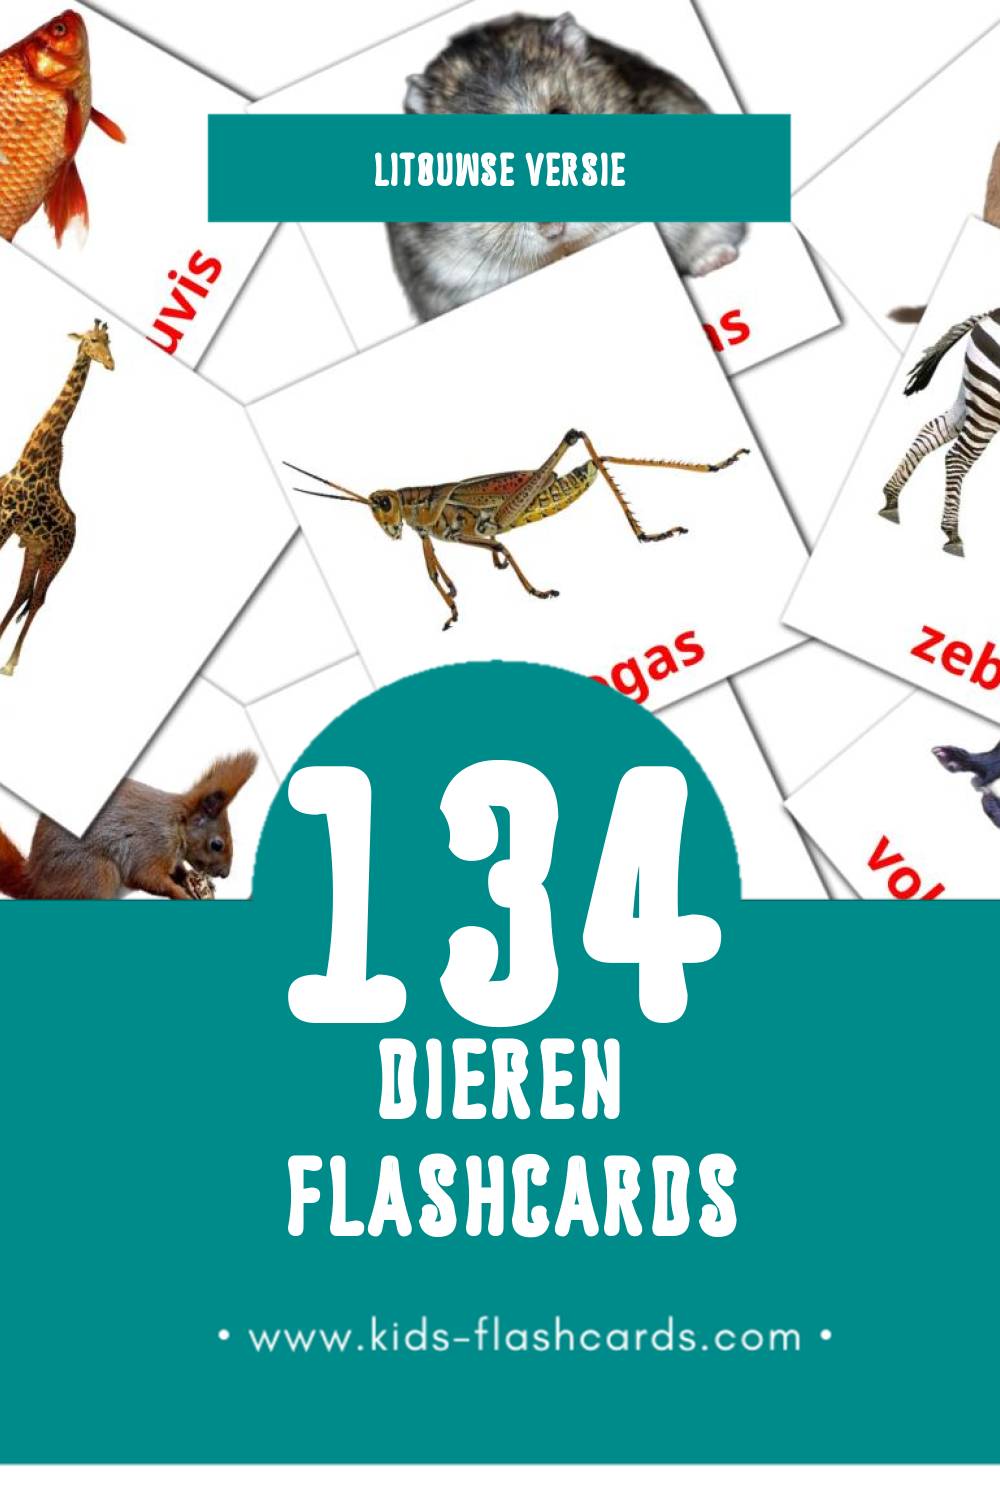 Visuele Gyvūnai Flashcards voor Kleuters (134 kaarten in het Litouws)